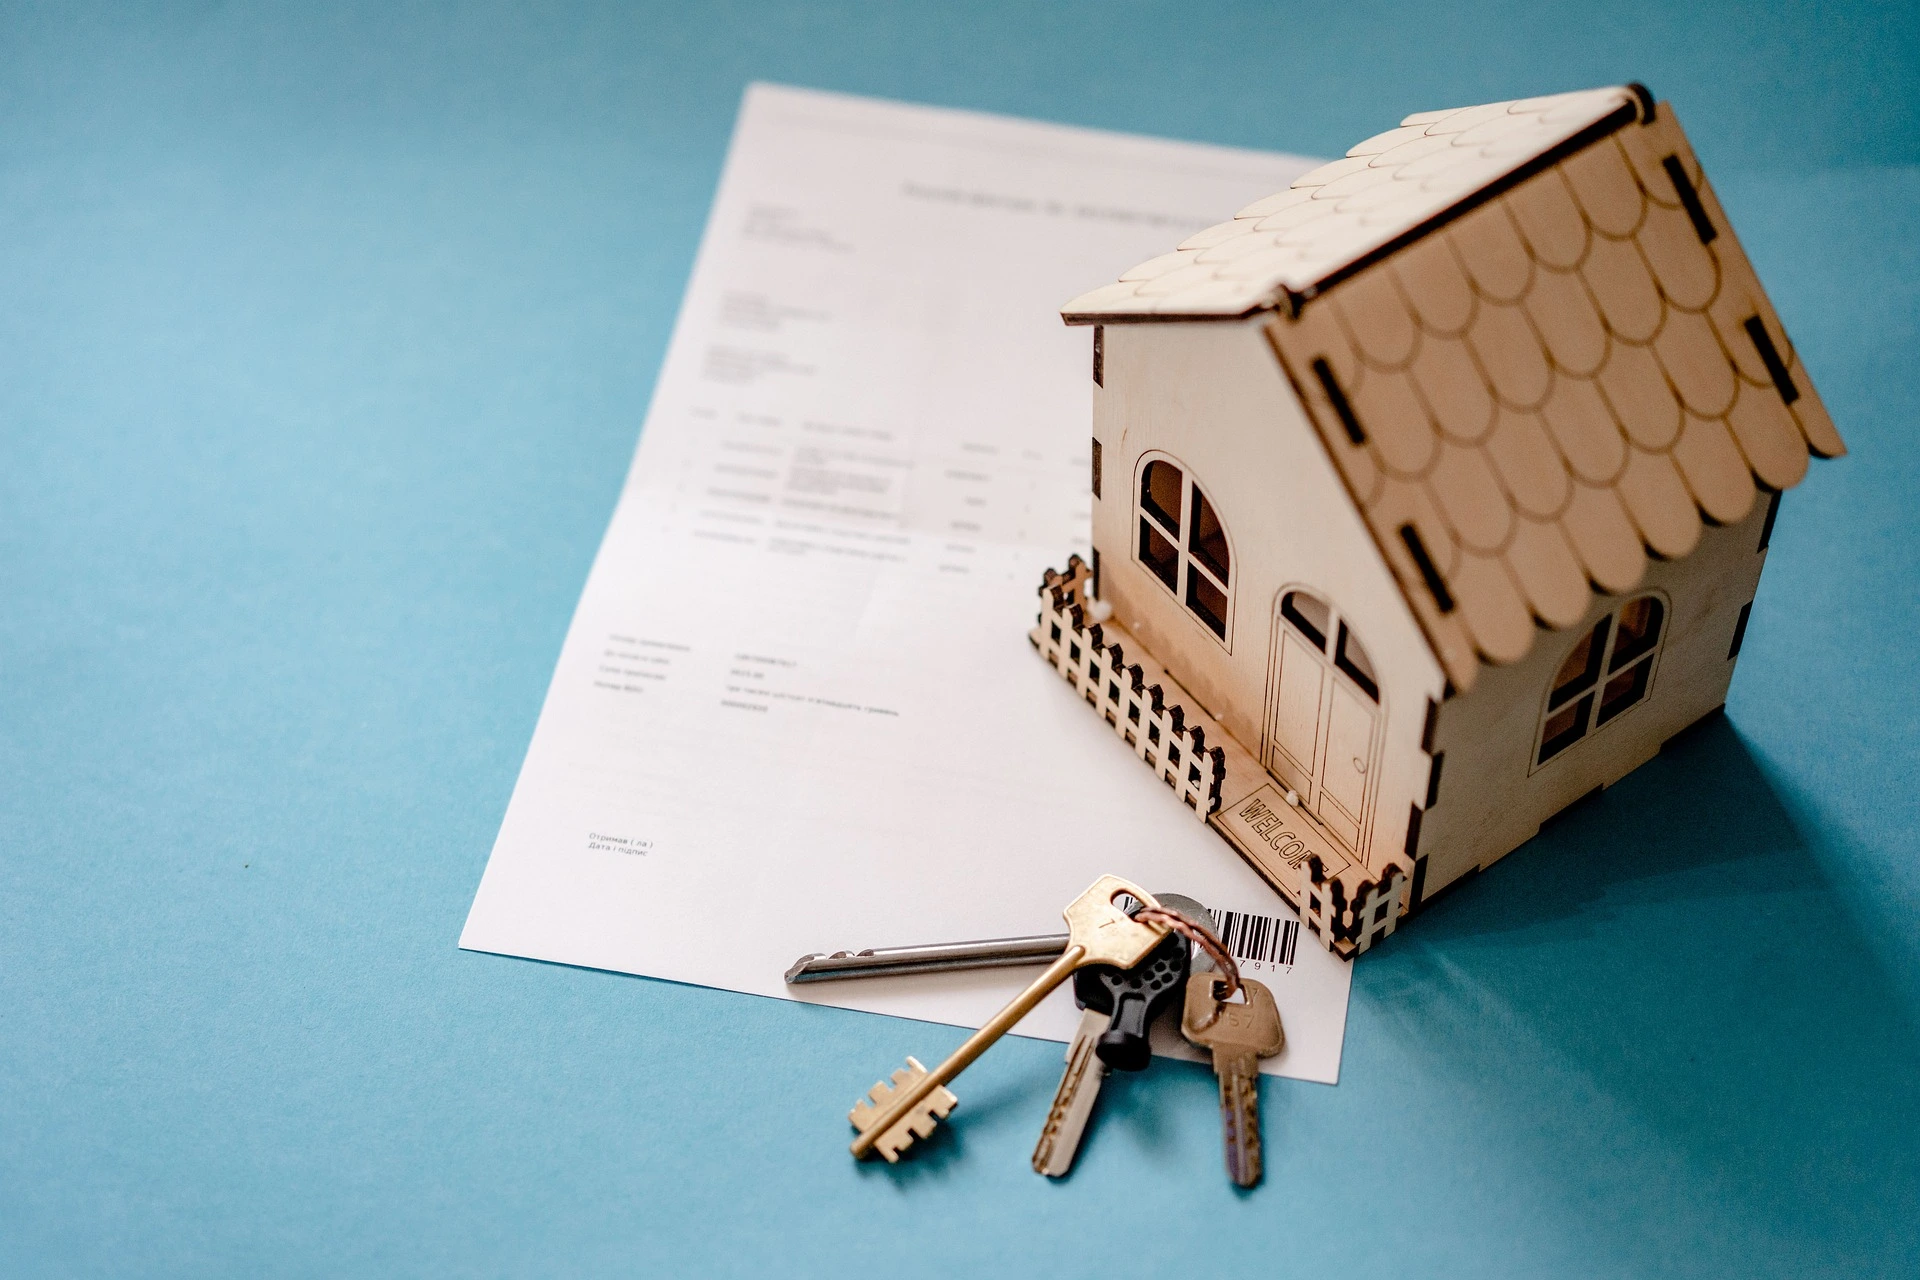 Une maquette de maison en bois posée sur un contrat emprunteur à côté duquel se trouve un trousseau de clés.